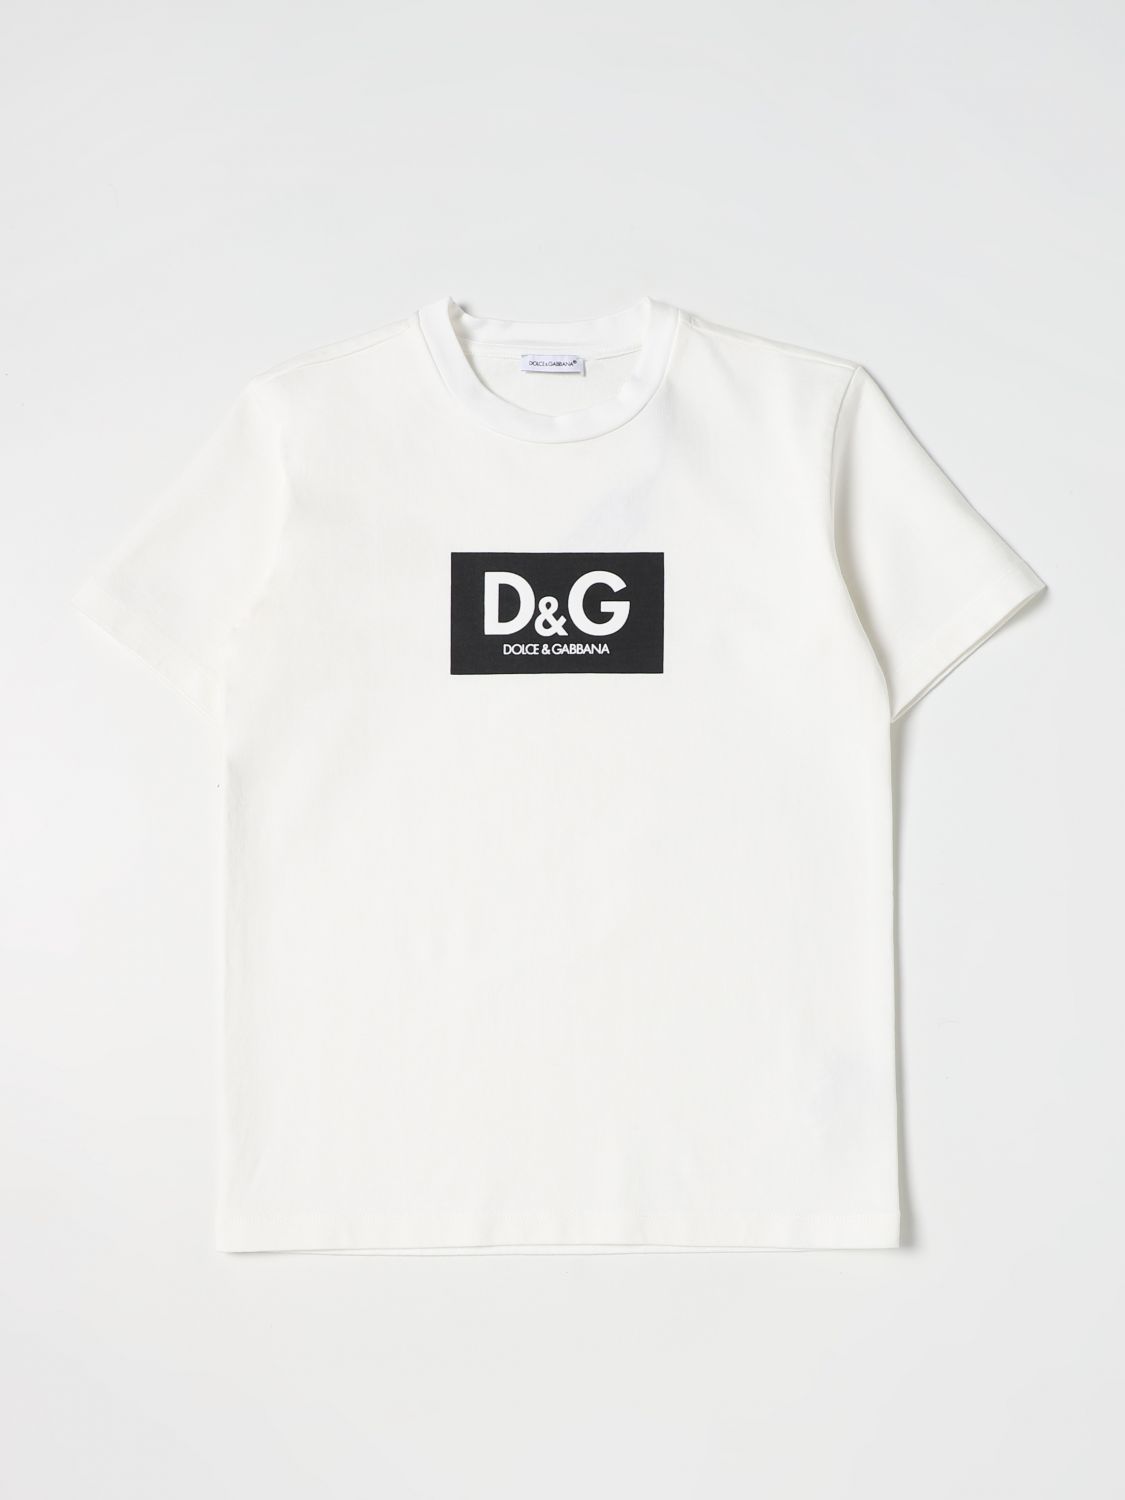 DOLCE & GABBANA: D&G t-shirt - White | Dolce & Gabbana t-shirt ...